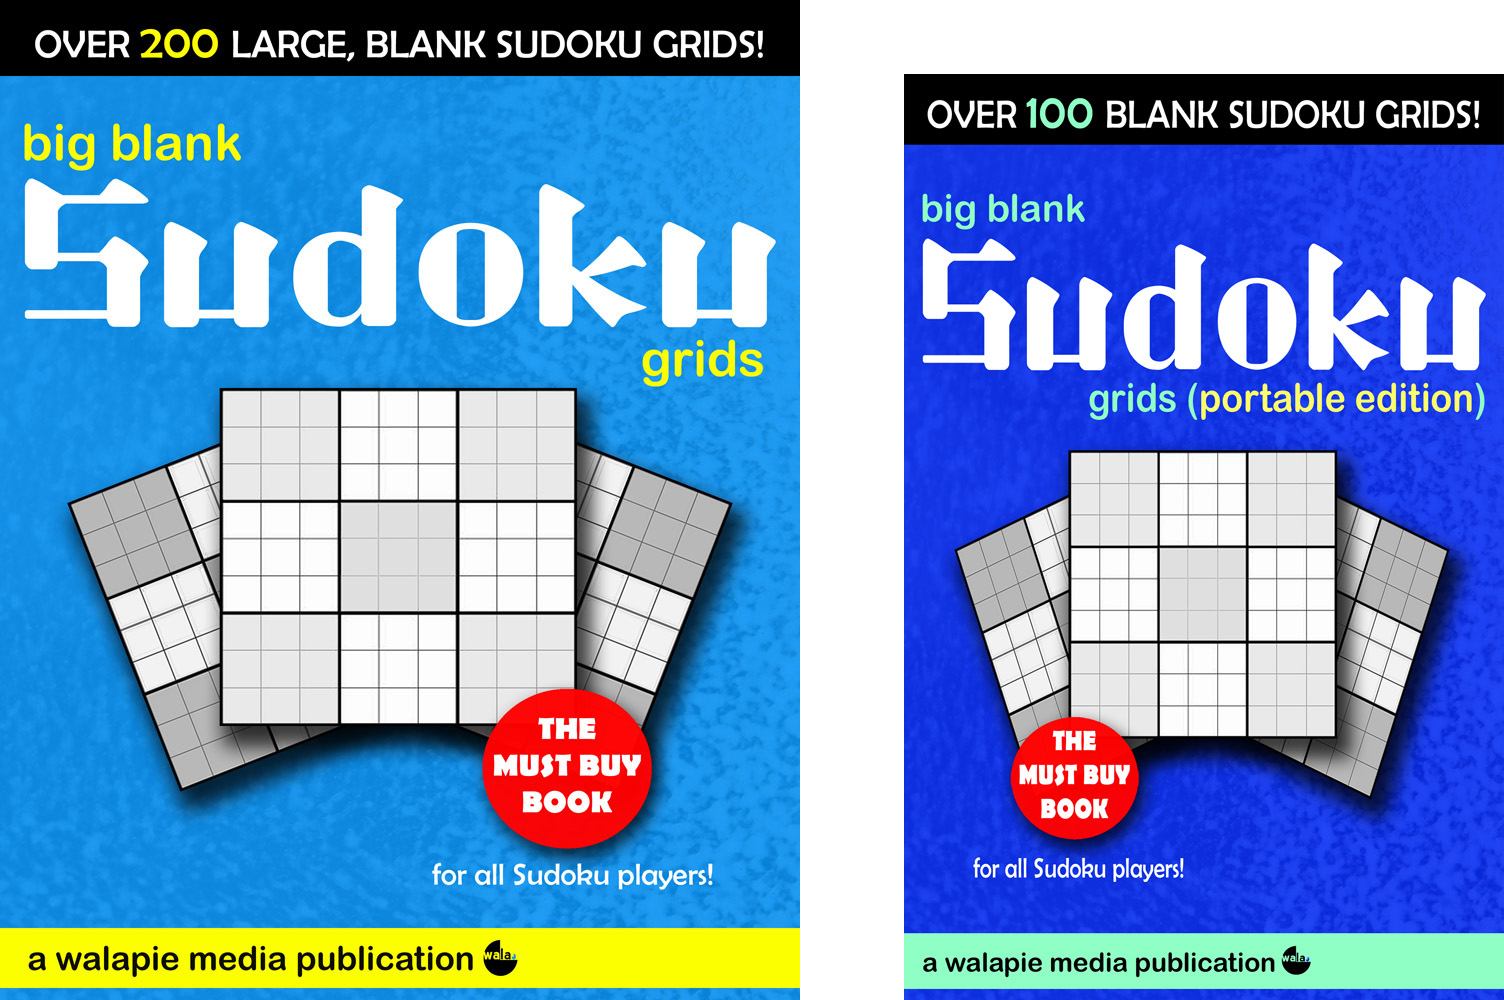 Free Sudoku Puzzles | Enjoy Daily Free Sudoku Puzzles From Walapie - Free Printable Sudoku Books